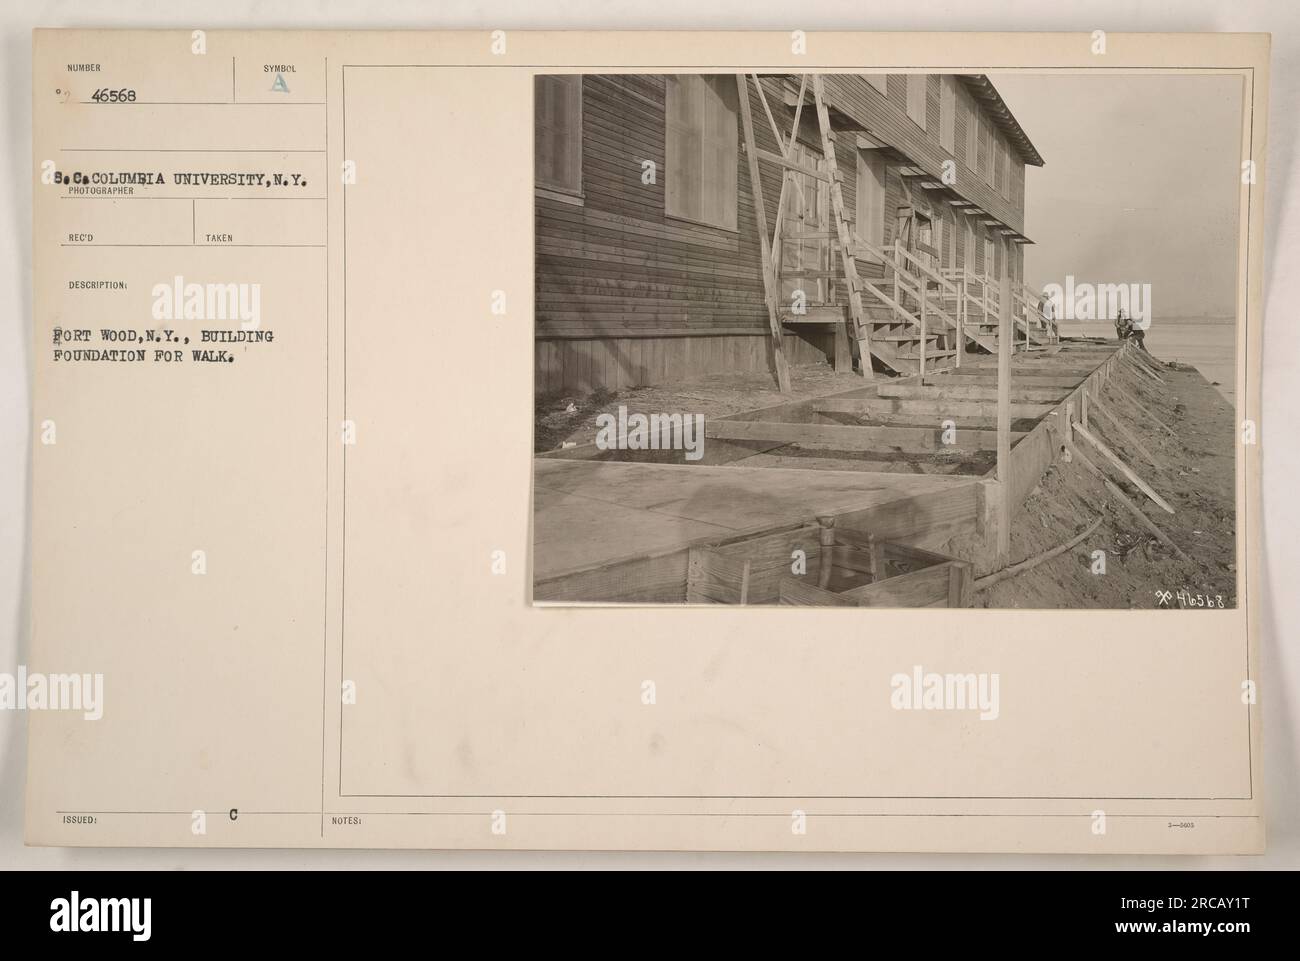 Ouvriers à fort Wood, New York construisant les fondations d'une passerelle. Cette activité a eu lieu en 1883 et la photographie a été prise par un photographe associé à l'Université Columbia. L'image est cataloguée sous la référence 46568. Banque D'Images